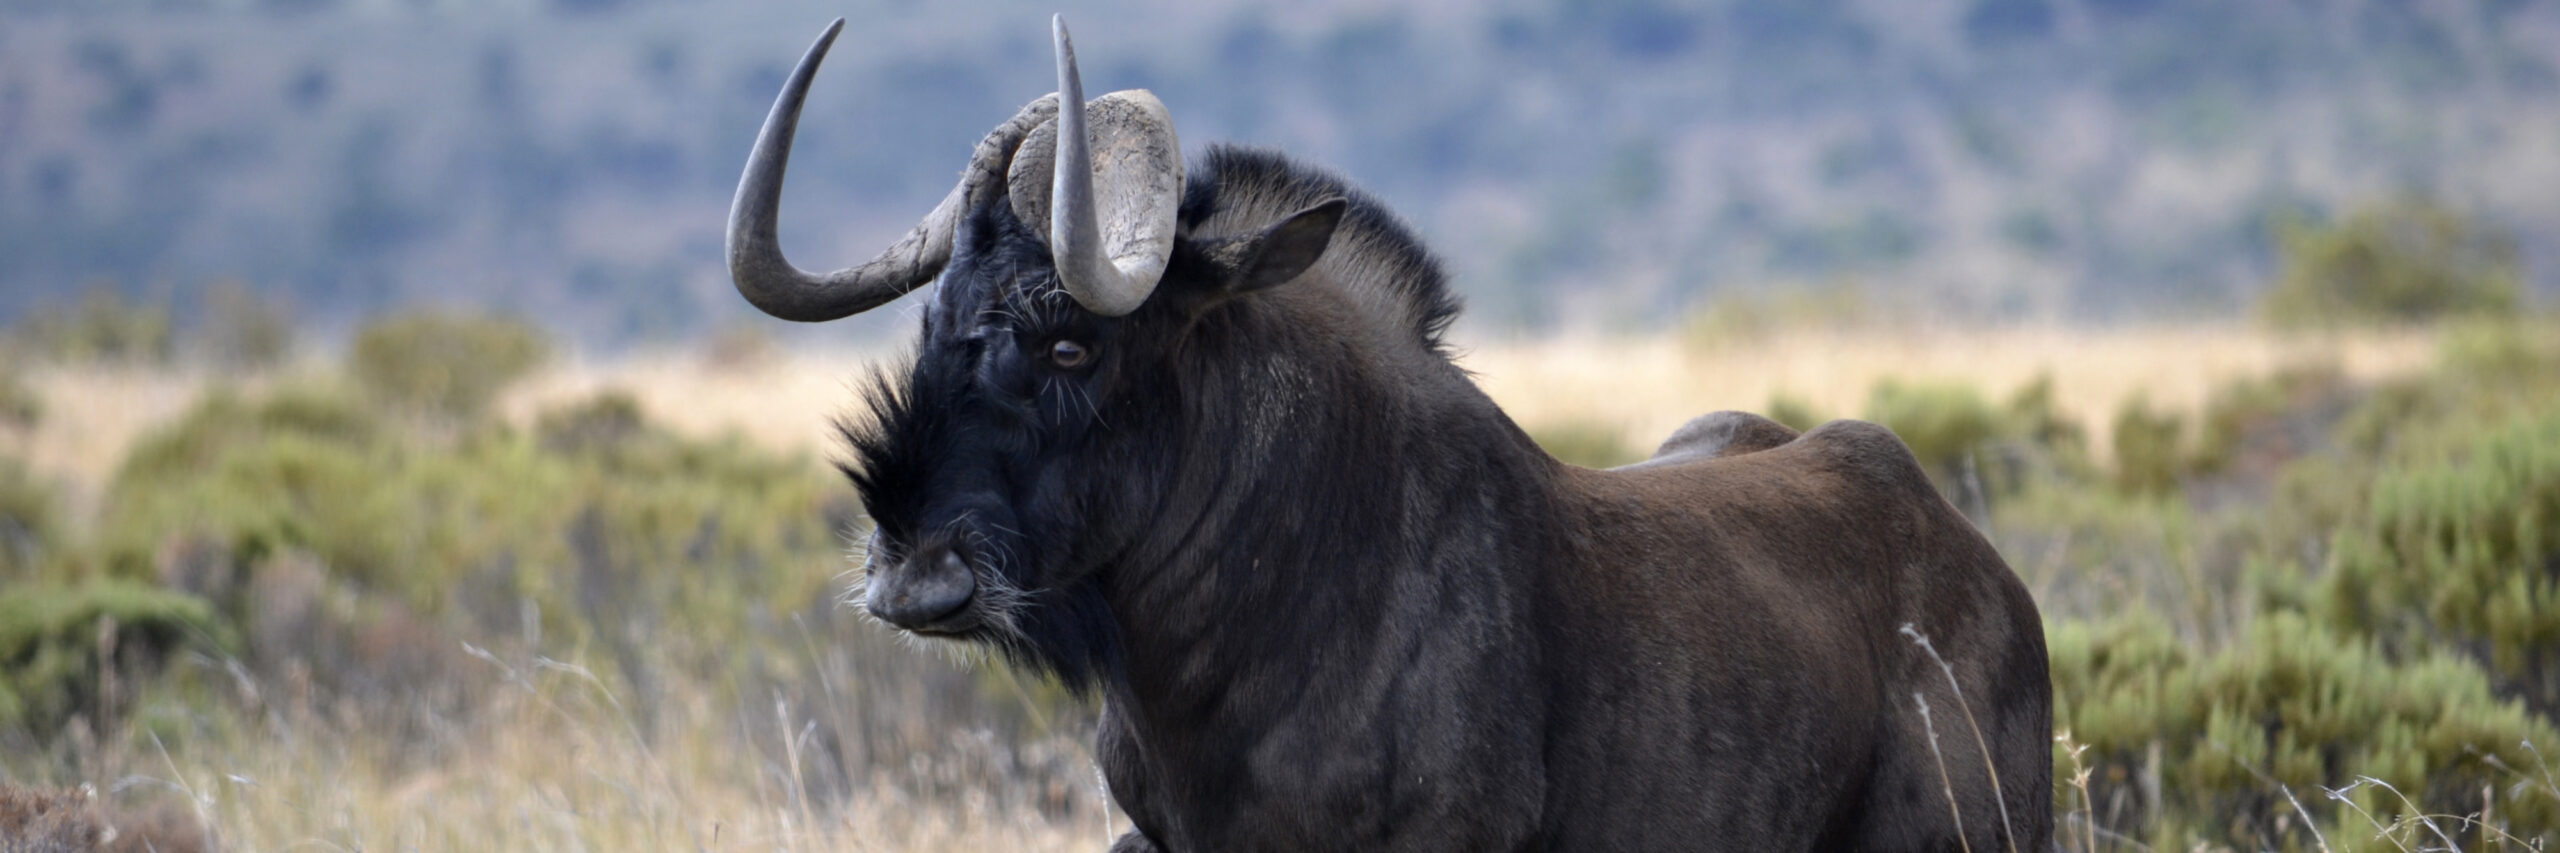 wildebeest-black